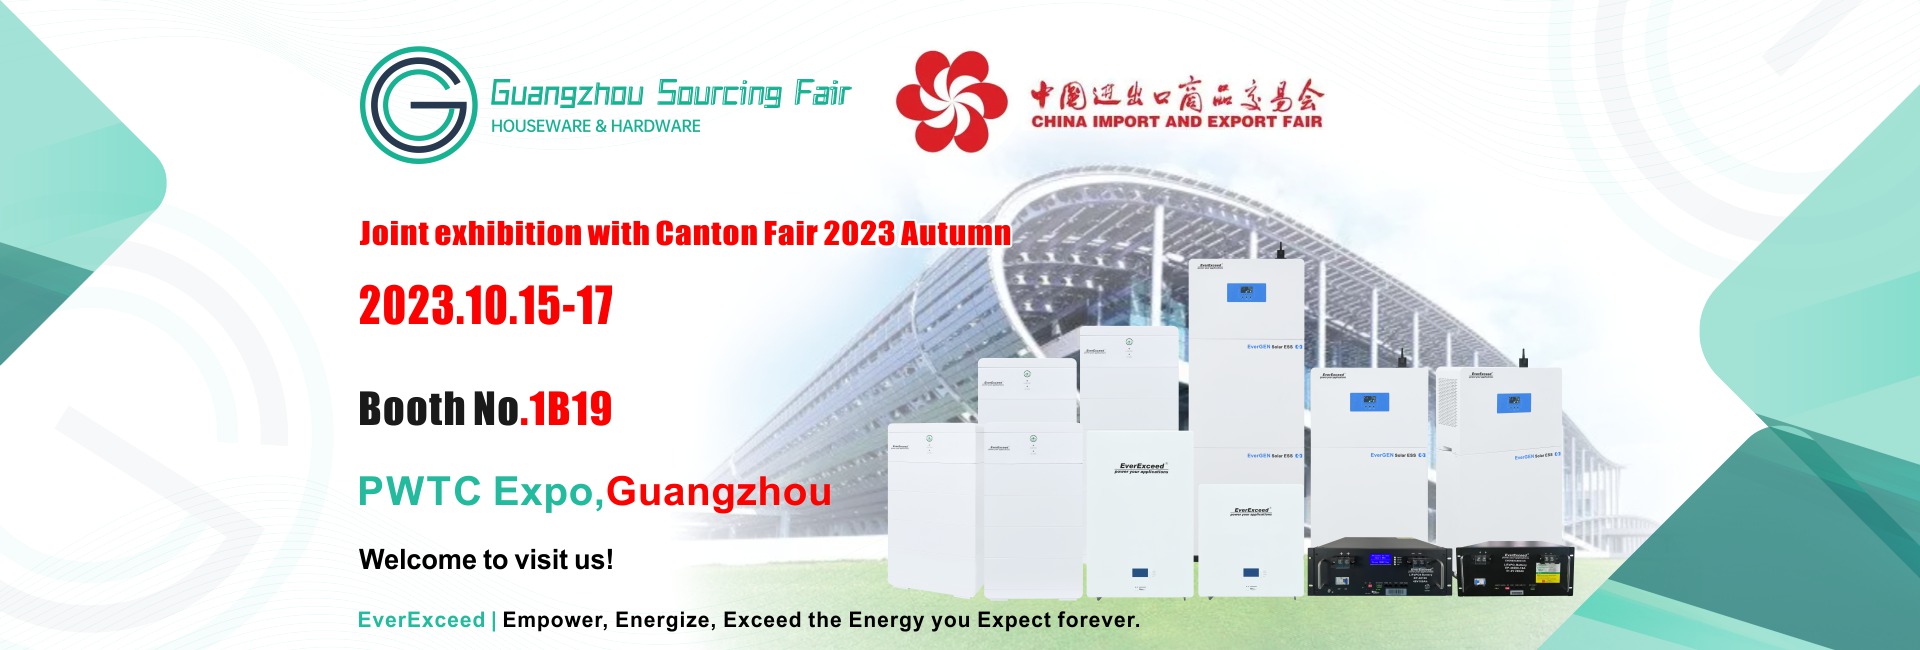 Guangzhou Sourcing Fair: Houseware&hardware